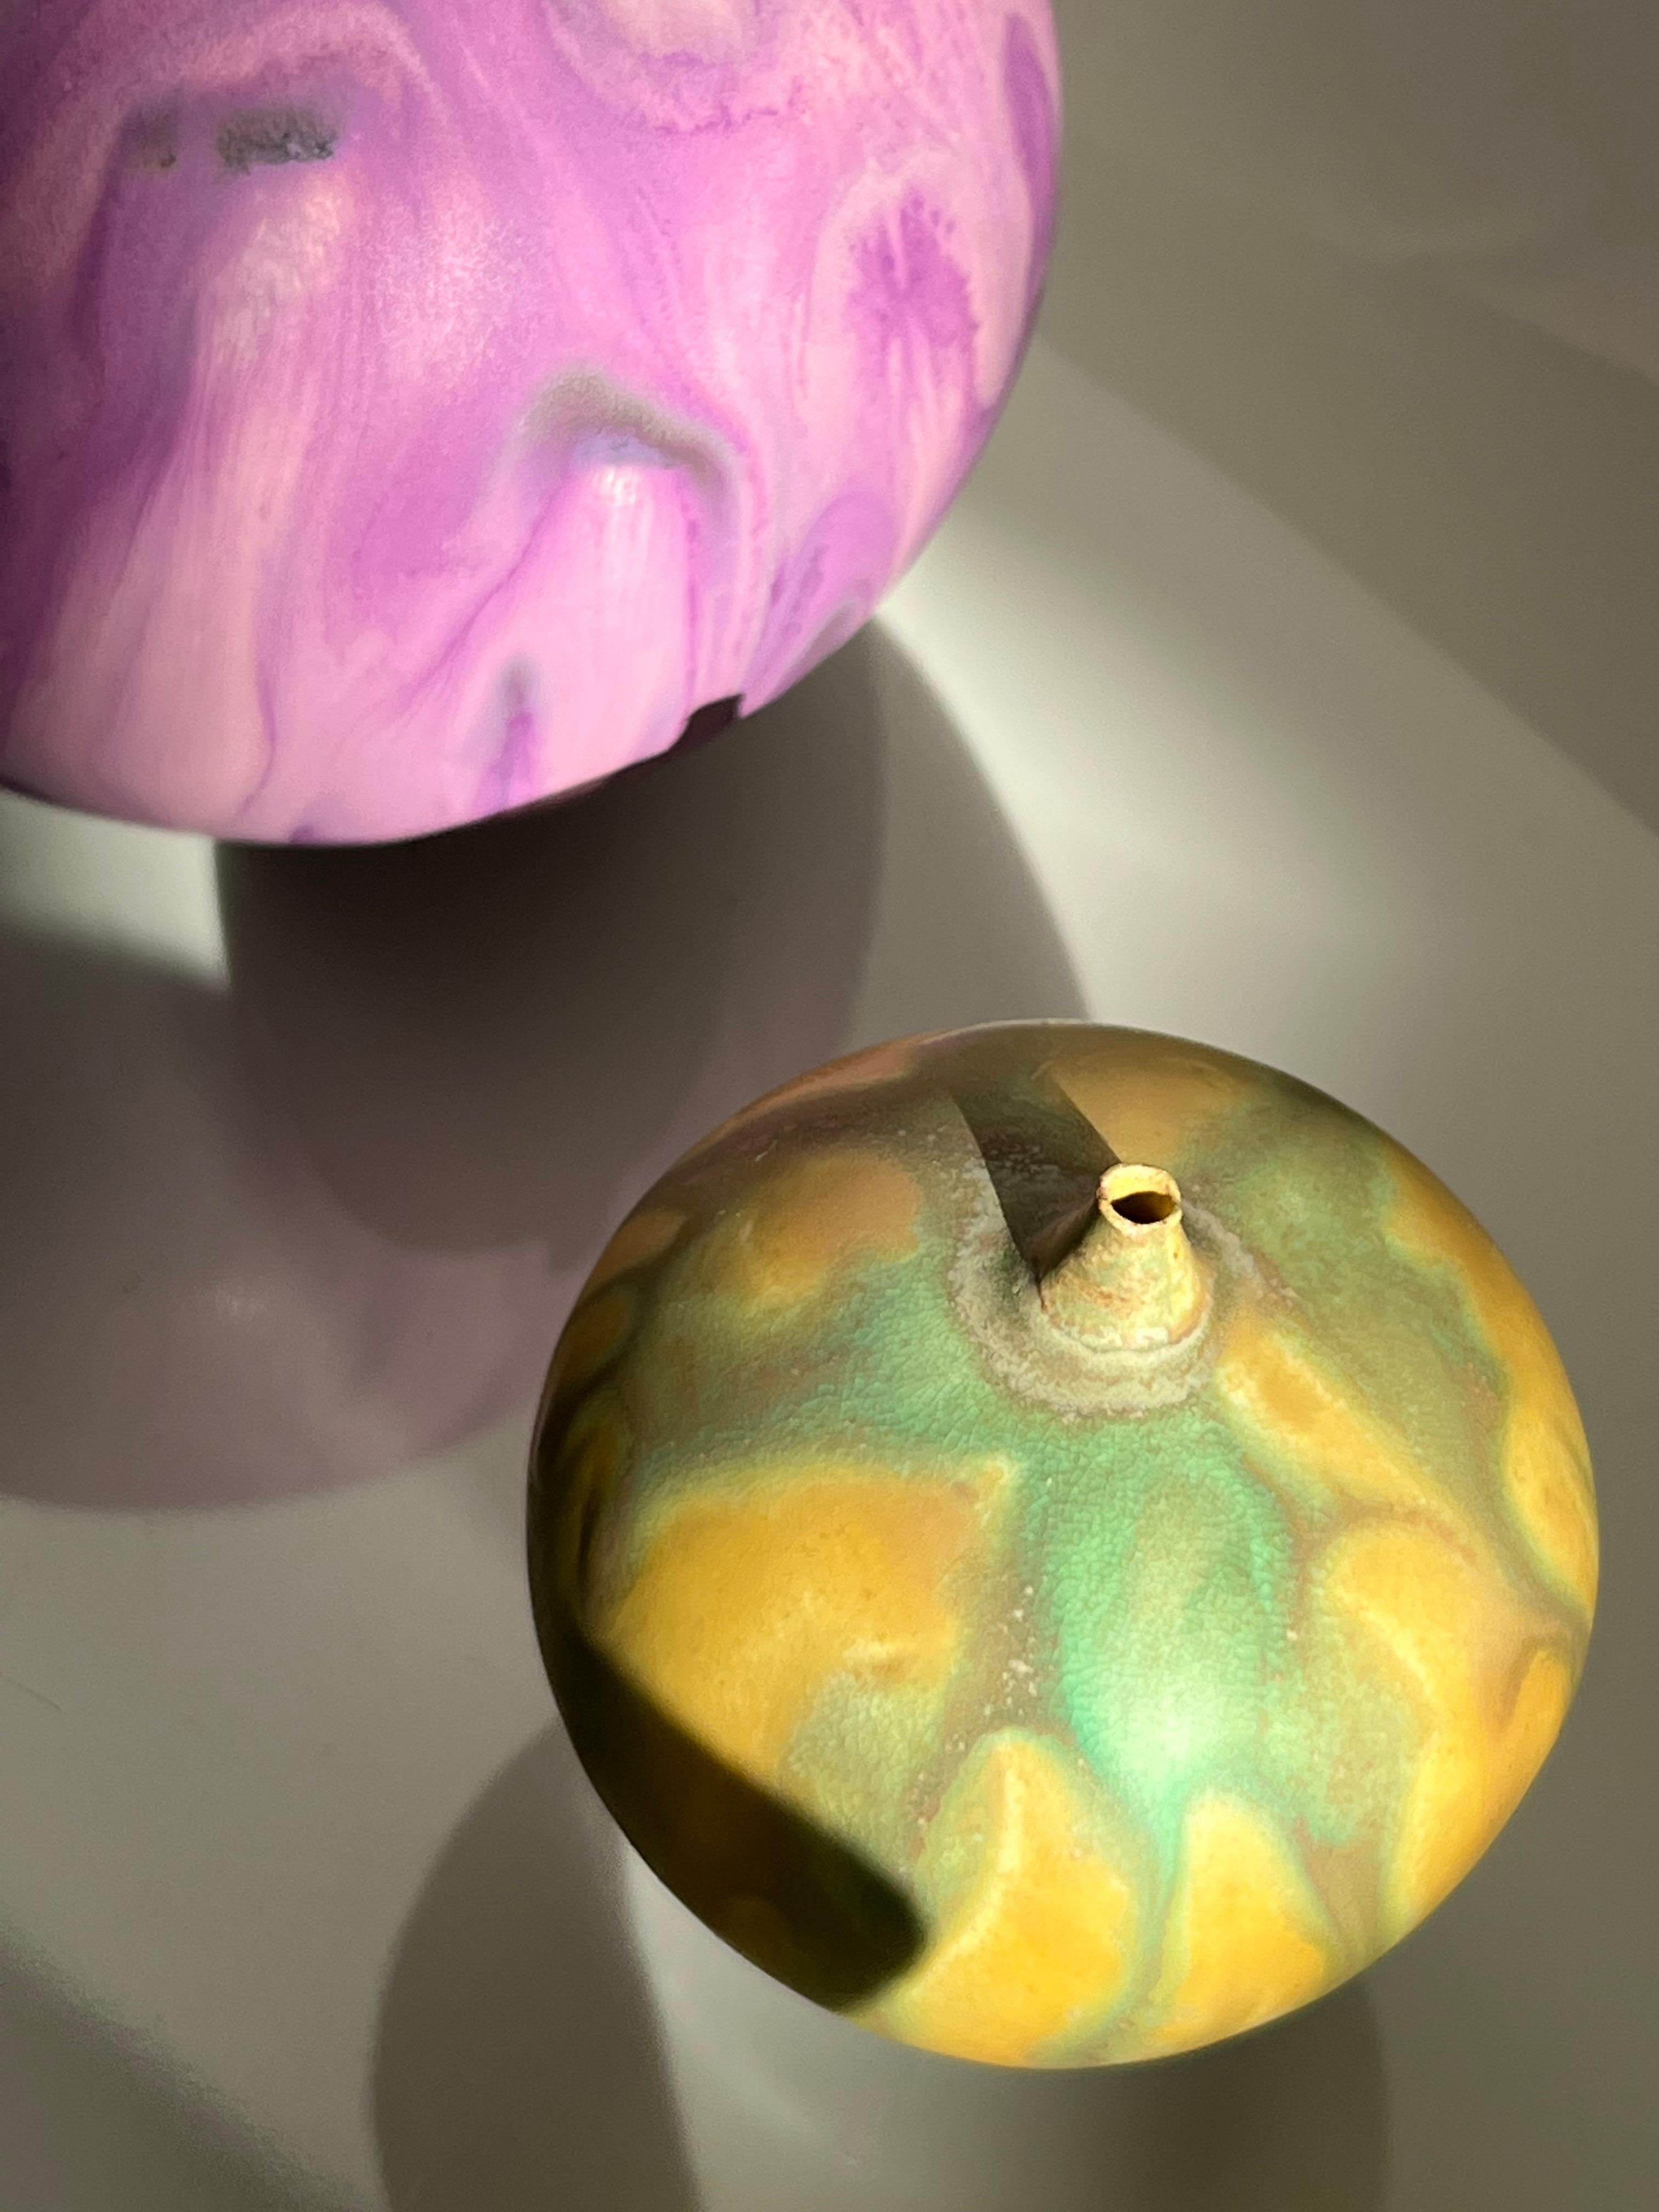 Rose and Erni Cabat Glazed Porcelain Feelie Vase, Yellow, Green Ceramic. Signé et daté.
Rose Cabat a travaillé la faïence, le grès et, enfin, la porcelaine à partir des années 1950. Bien qu'elle soit surtout connue pour ses 